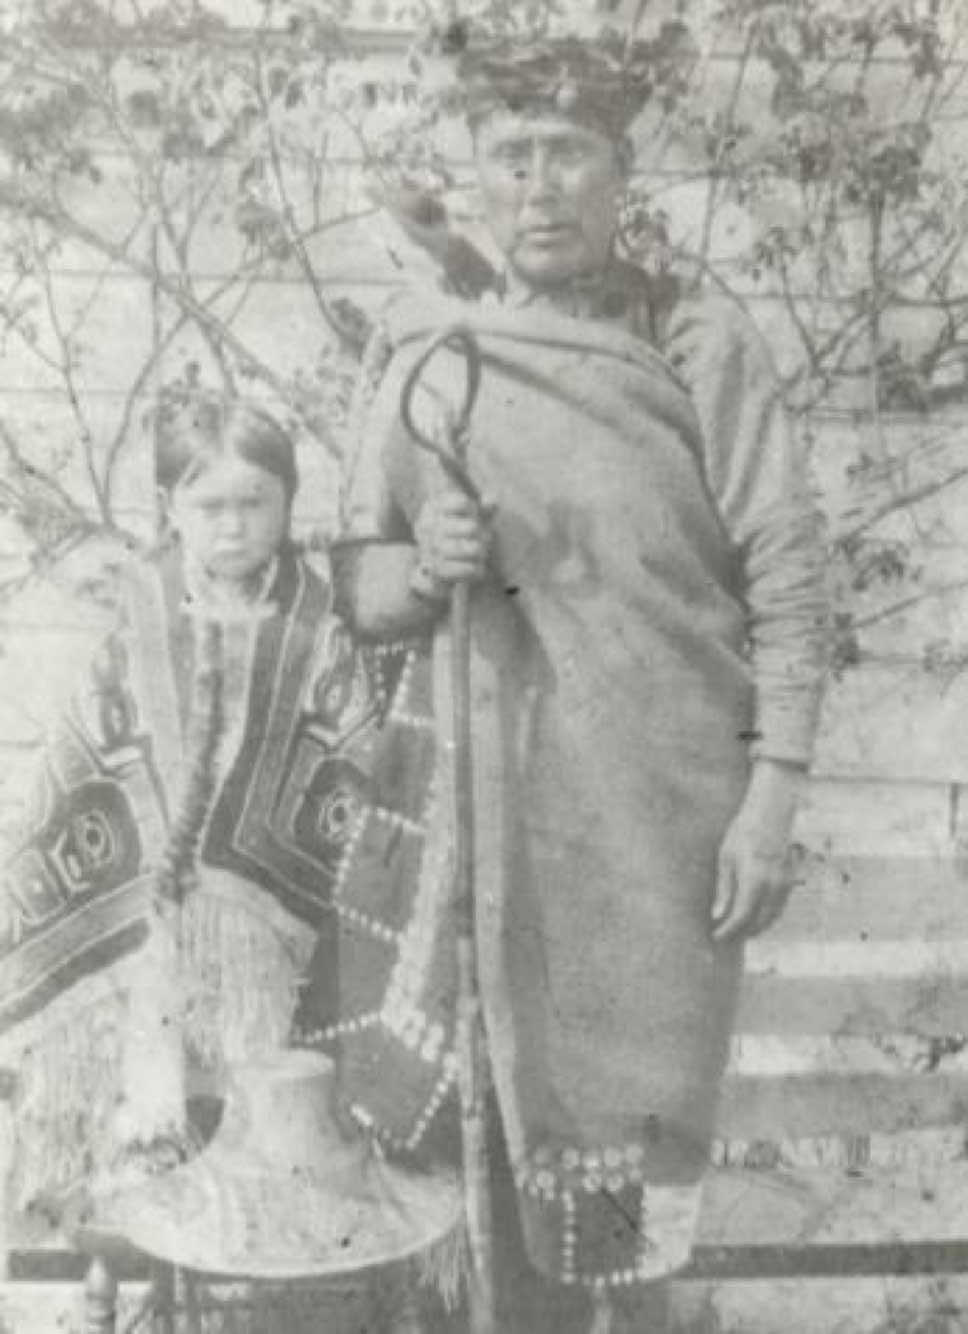 Photographie noir et blanc de Tsandigam Nege', Harry Mountain, portant un attirail d'écorce de cèdre, se tenant à côté un enfant vêtu d'une couverture à boutons